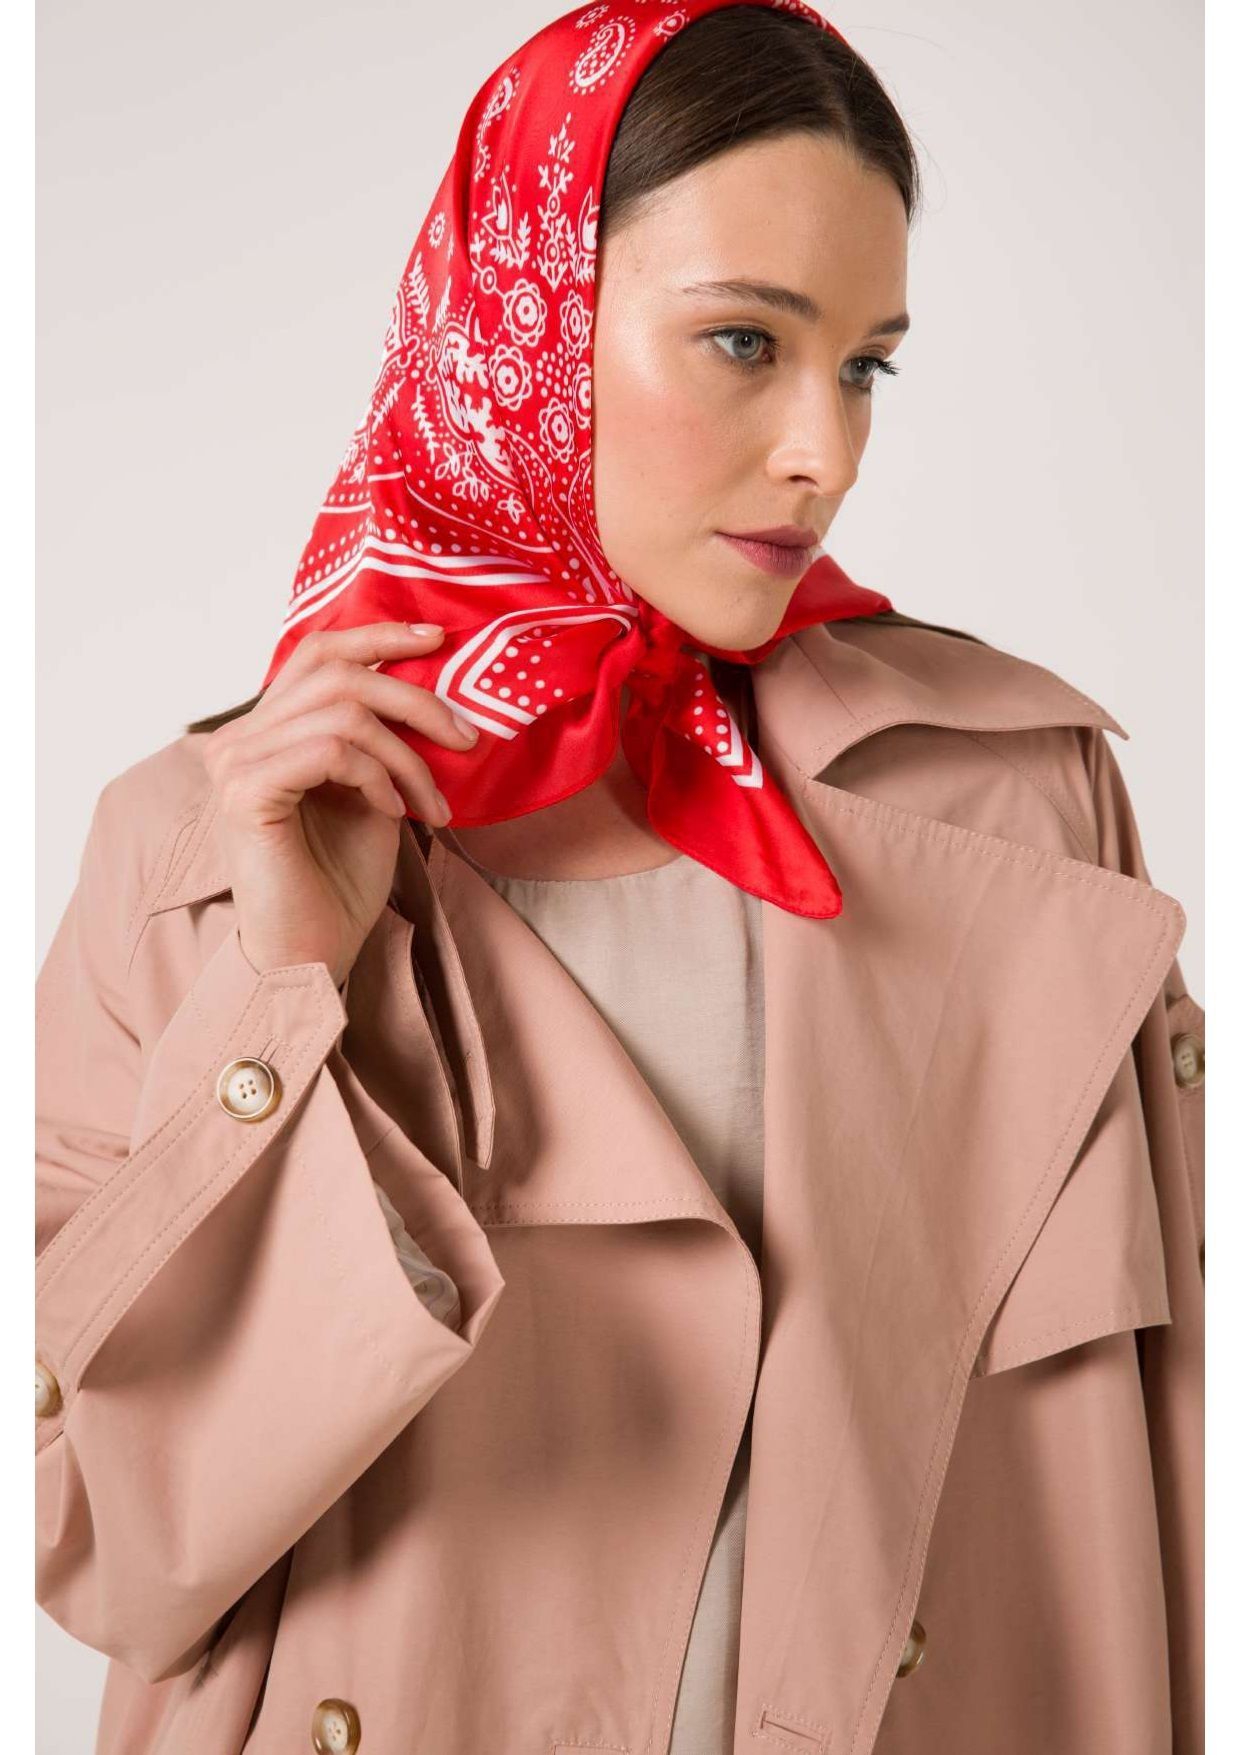 Платок красного цвета. Красный платок на голову. Красный шелковый платок. Красные красивые платки. Красный платок на шее.